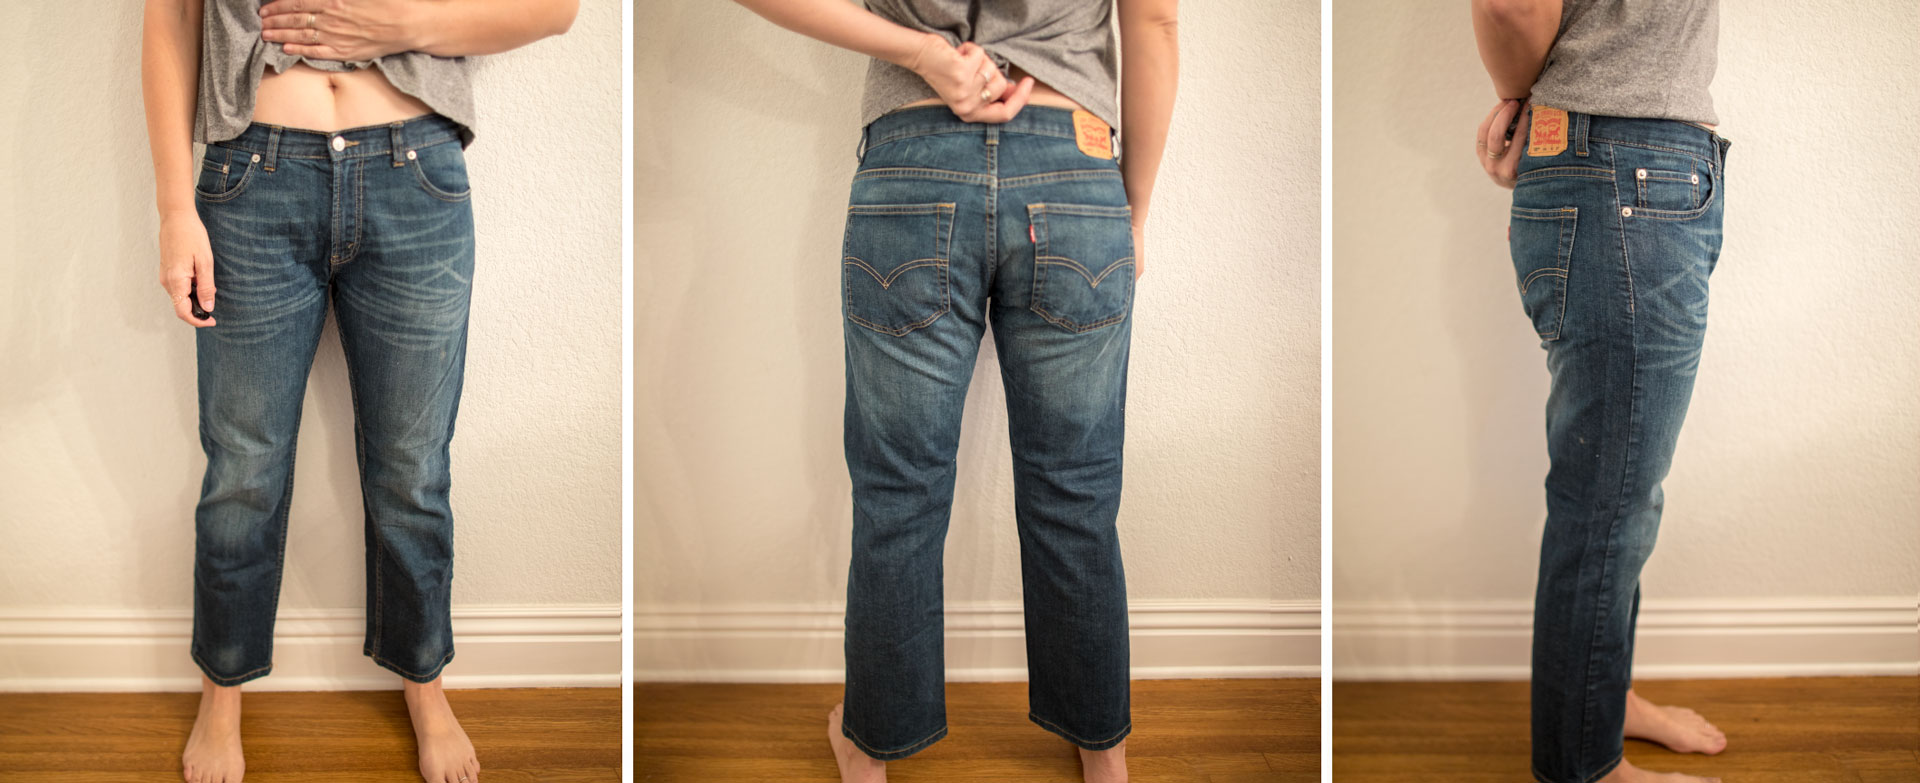 levis mens jeans fit guide